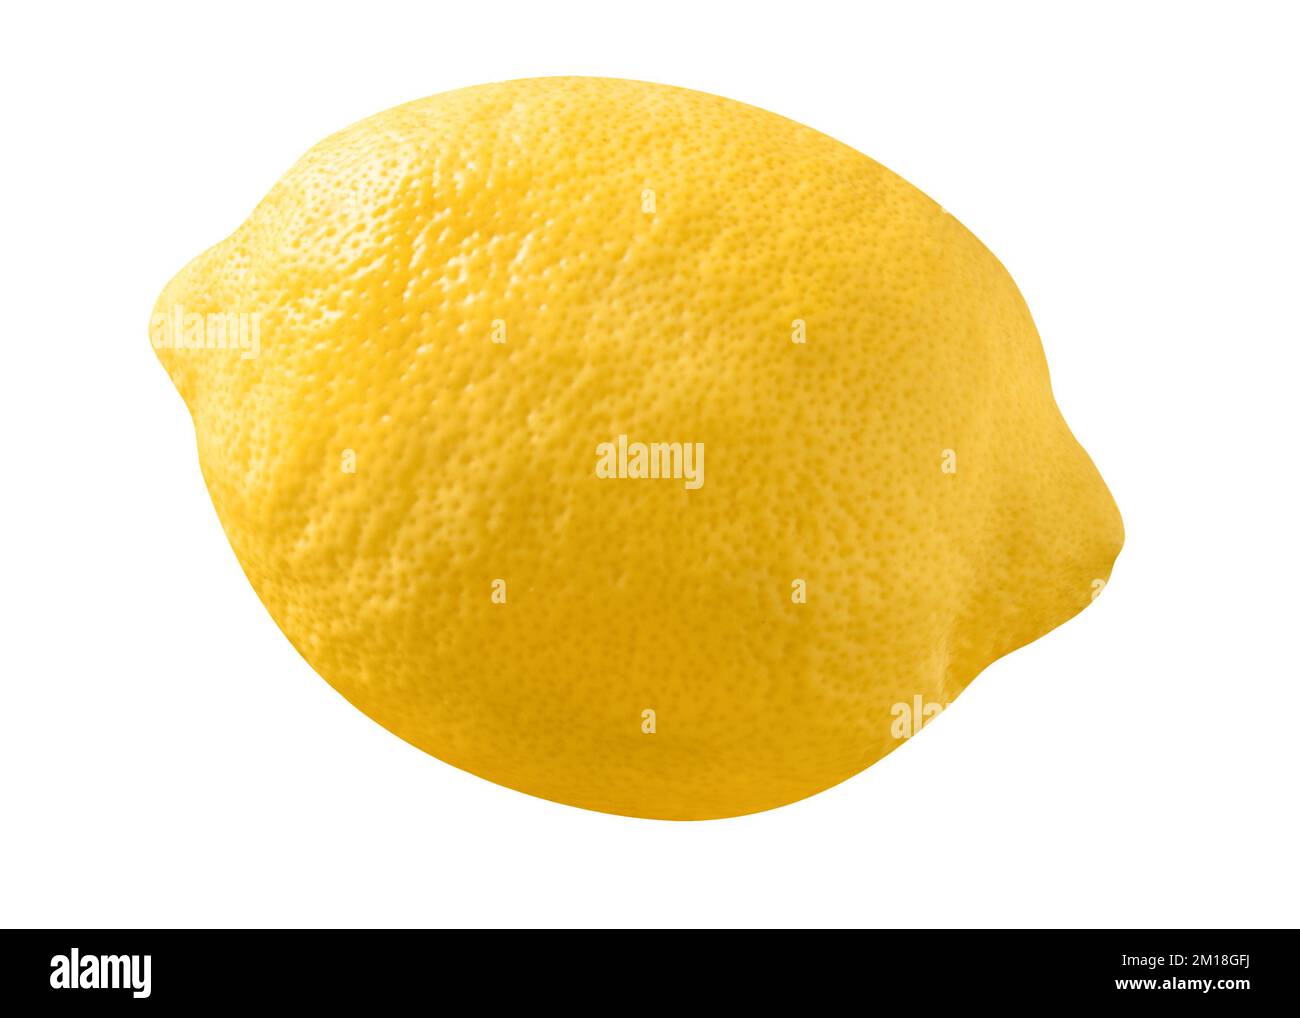 1 fruit de citron isolé sur fond blanc Banque D'Images